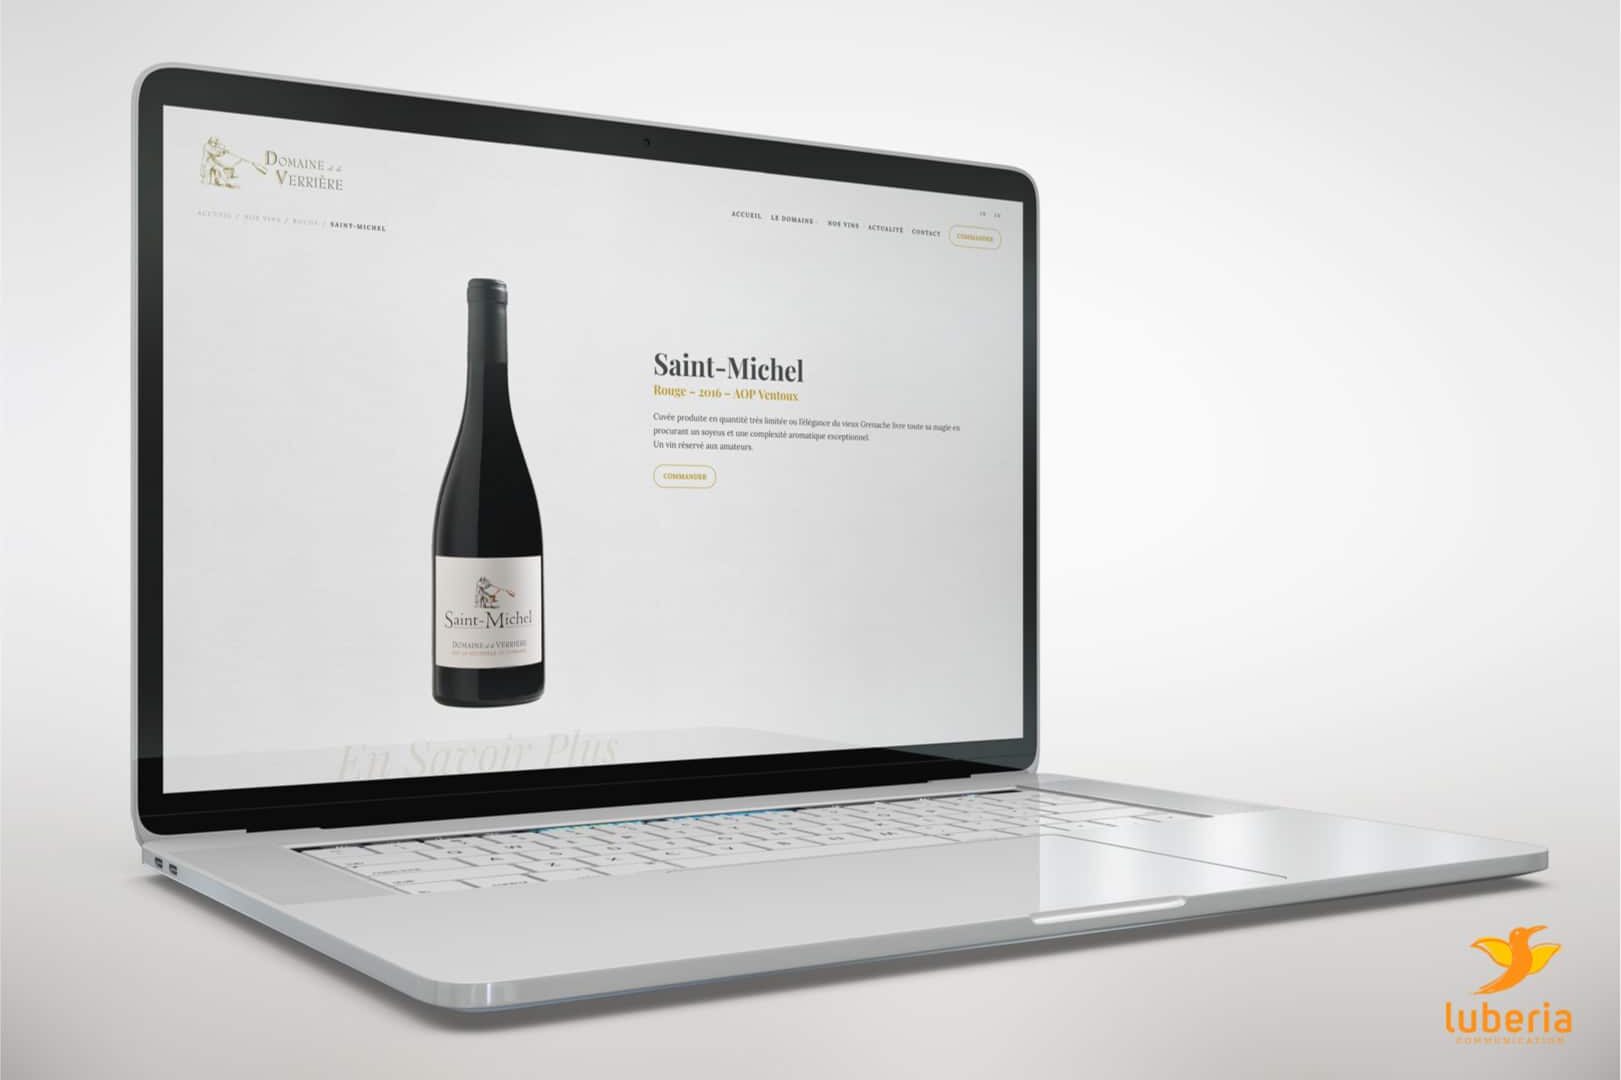 Création de site web pour domaine viticole, vignoble et cave à vin